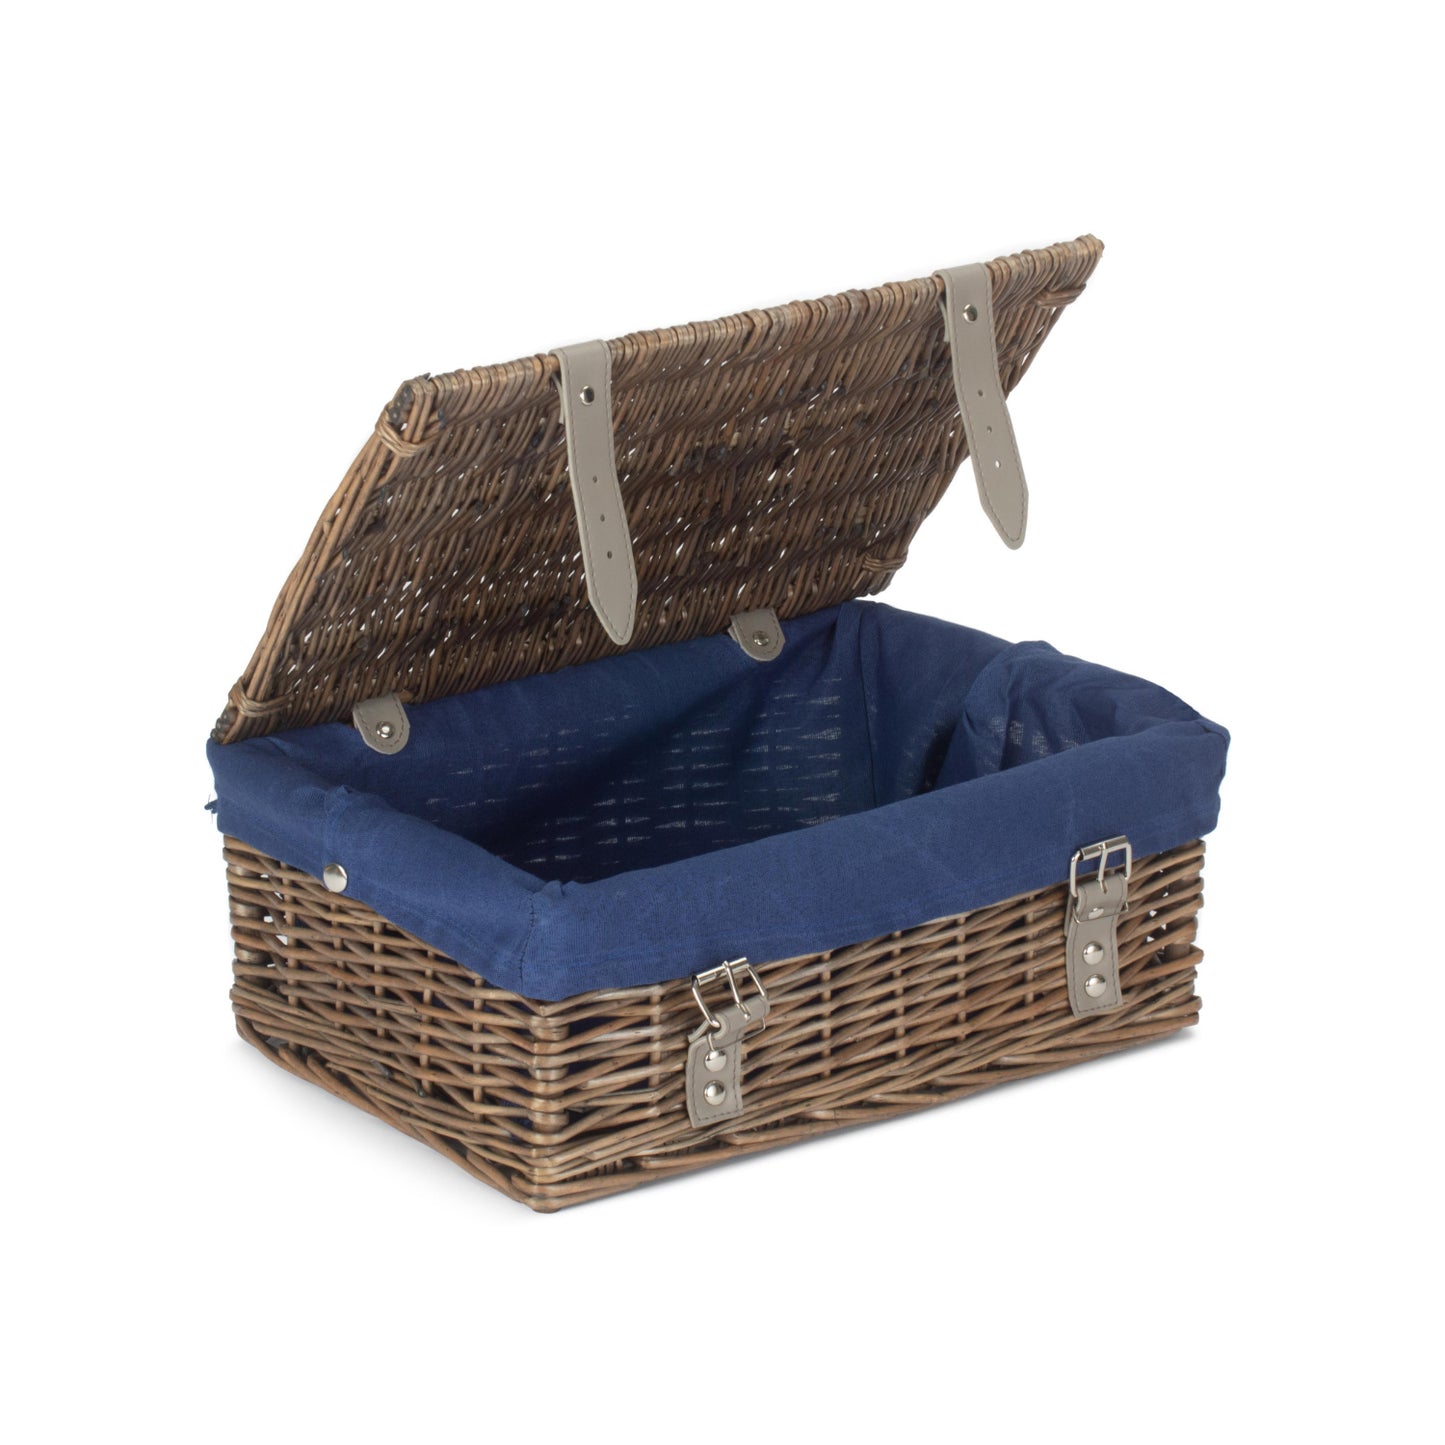 14 Inch Empty Wicker Hamper Basket - Antique Wash - Navy Blue Lining